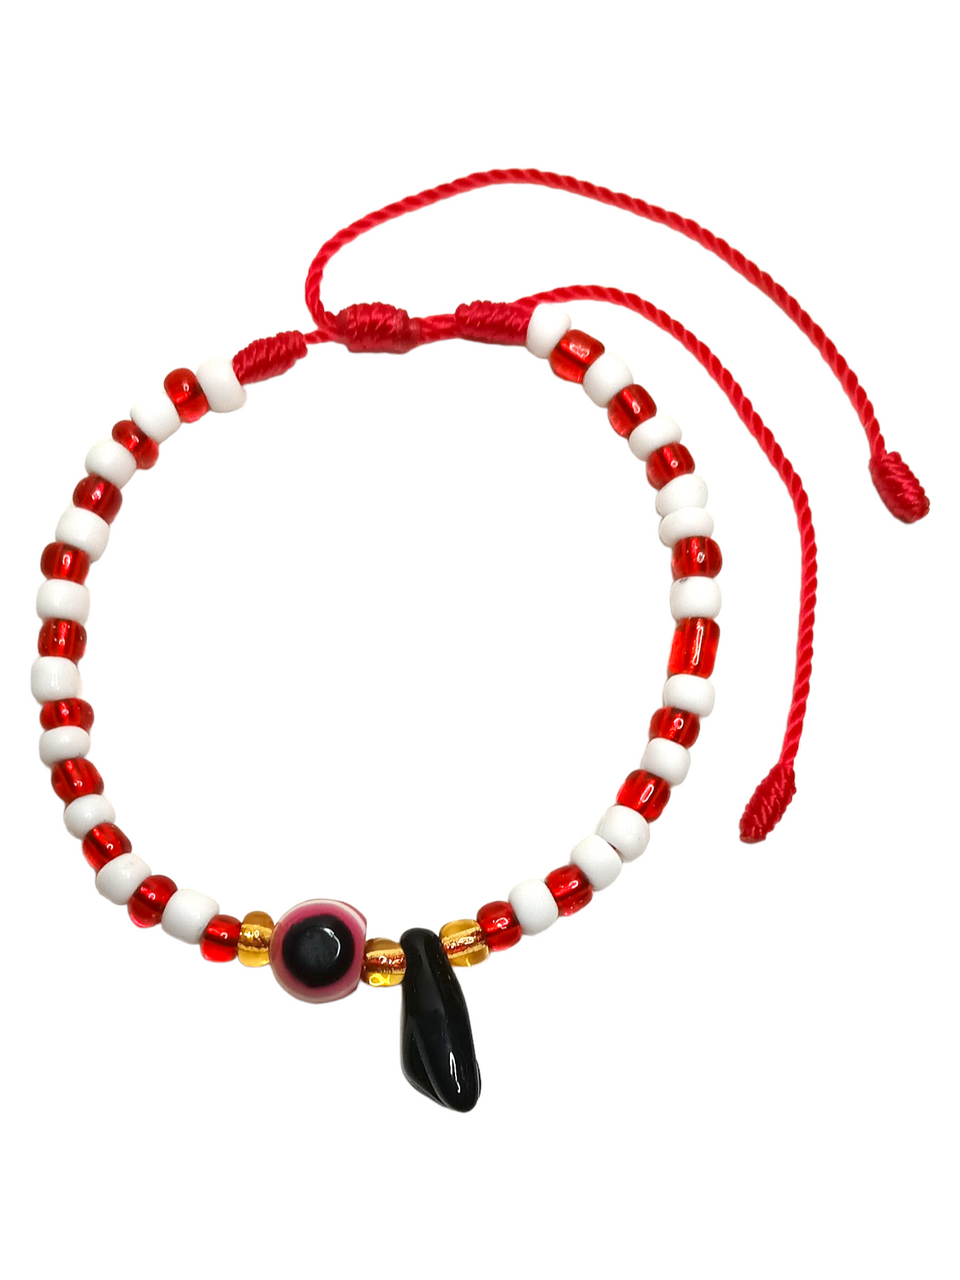 Azabache Red Evil Eye Red/White Spiritual Bracelet For Protection